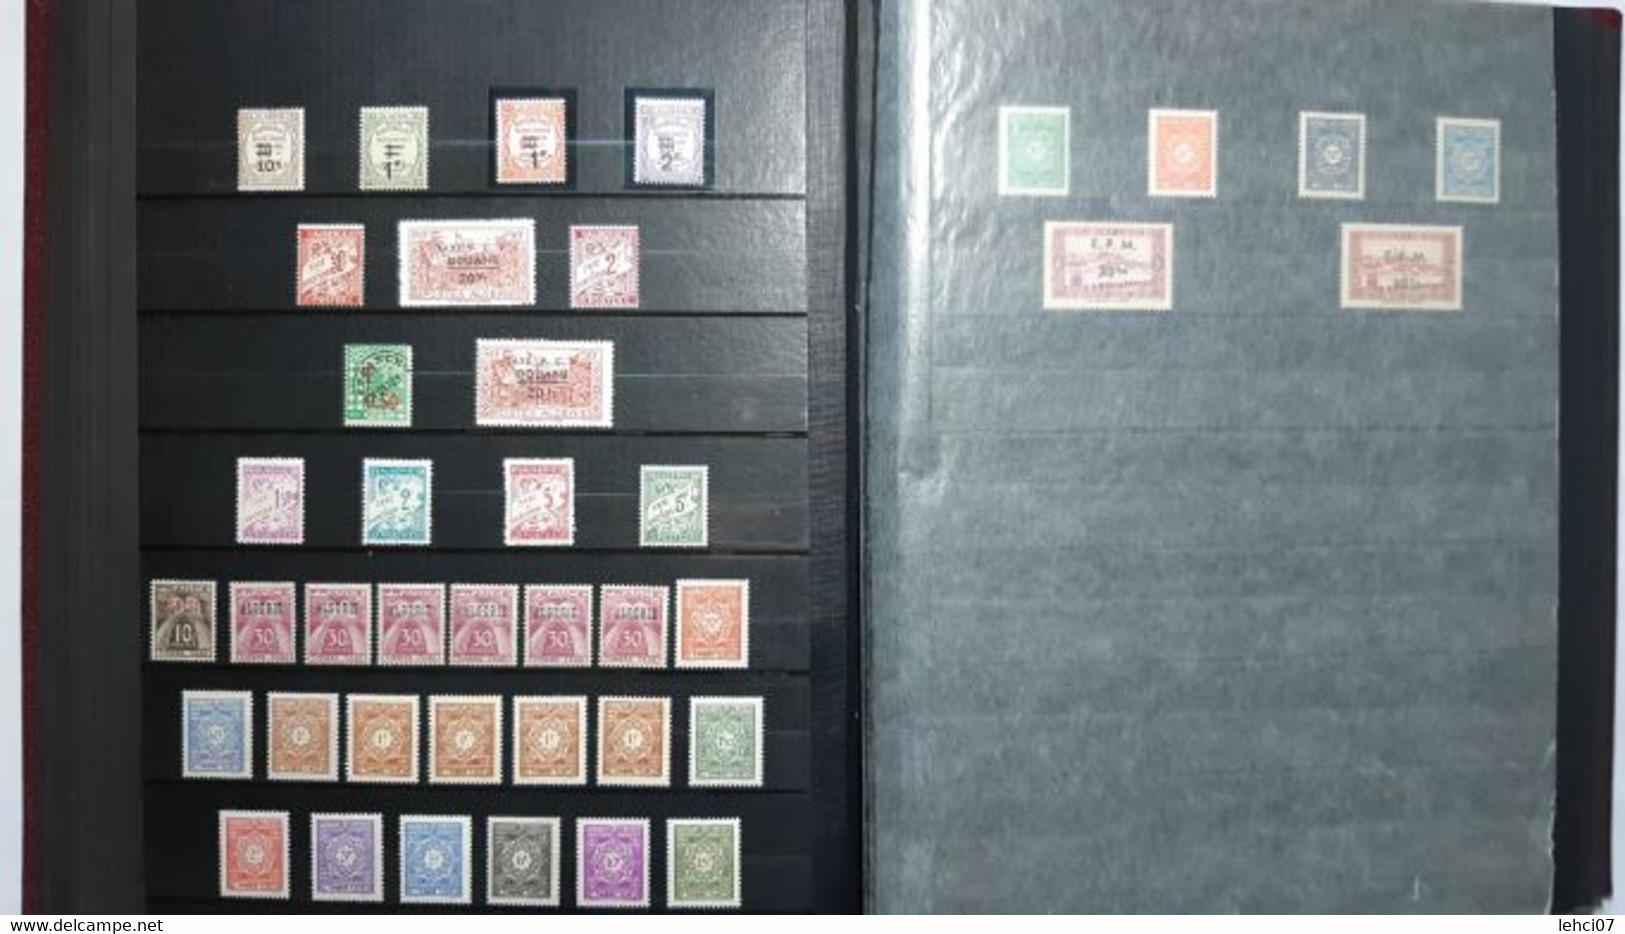 ALGÉRIE Exceptionnelle collection ancienne colonie 580 timbres neufs